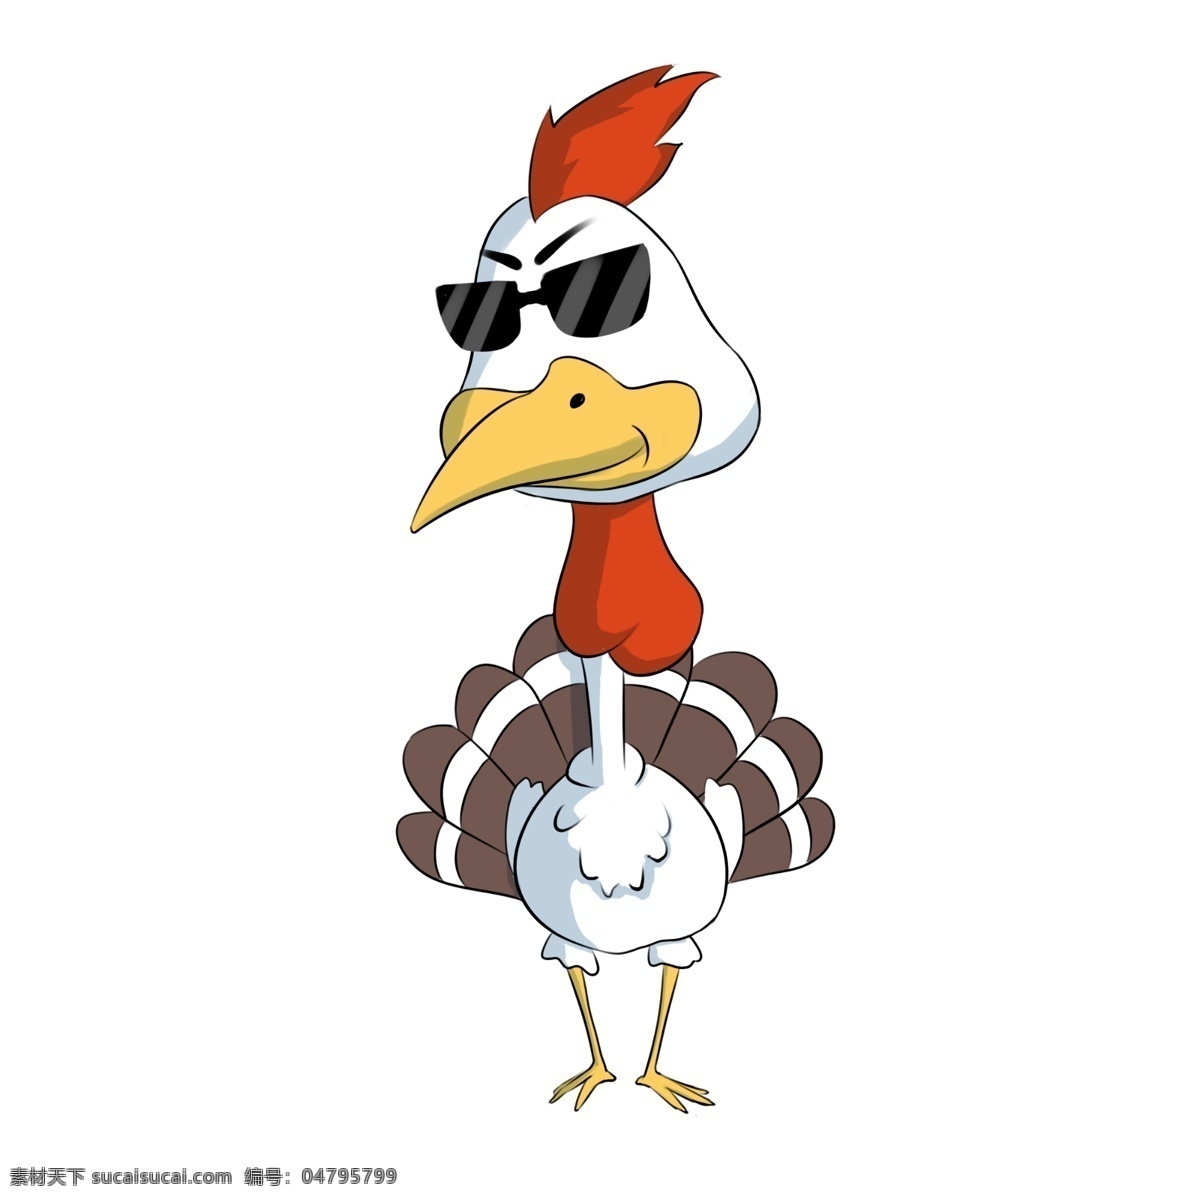 感恩节 酷 火鸡 感恩节火鸡 褐色的羽毛 黄色的头冠 开心的火鸡 黑色 遮阳 眼镜 插画